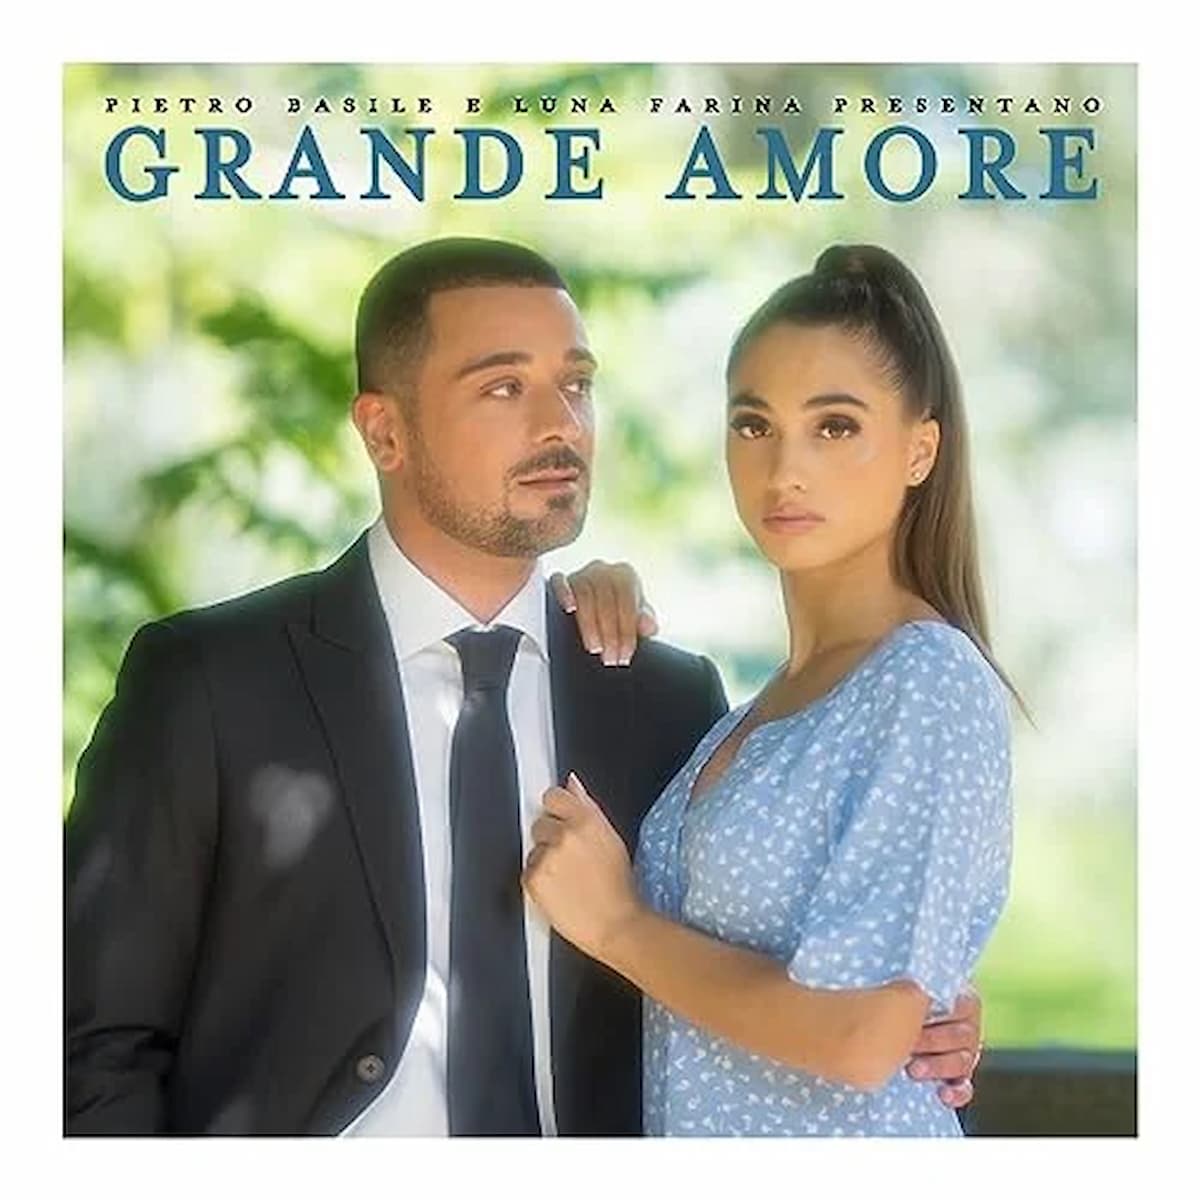 Pietro Basile & Luna Farina - Große Ballade “Grande Amore” zwischen Schlager und Pop veröffentlicht